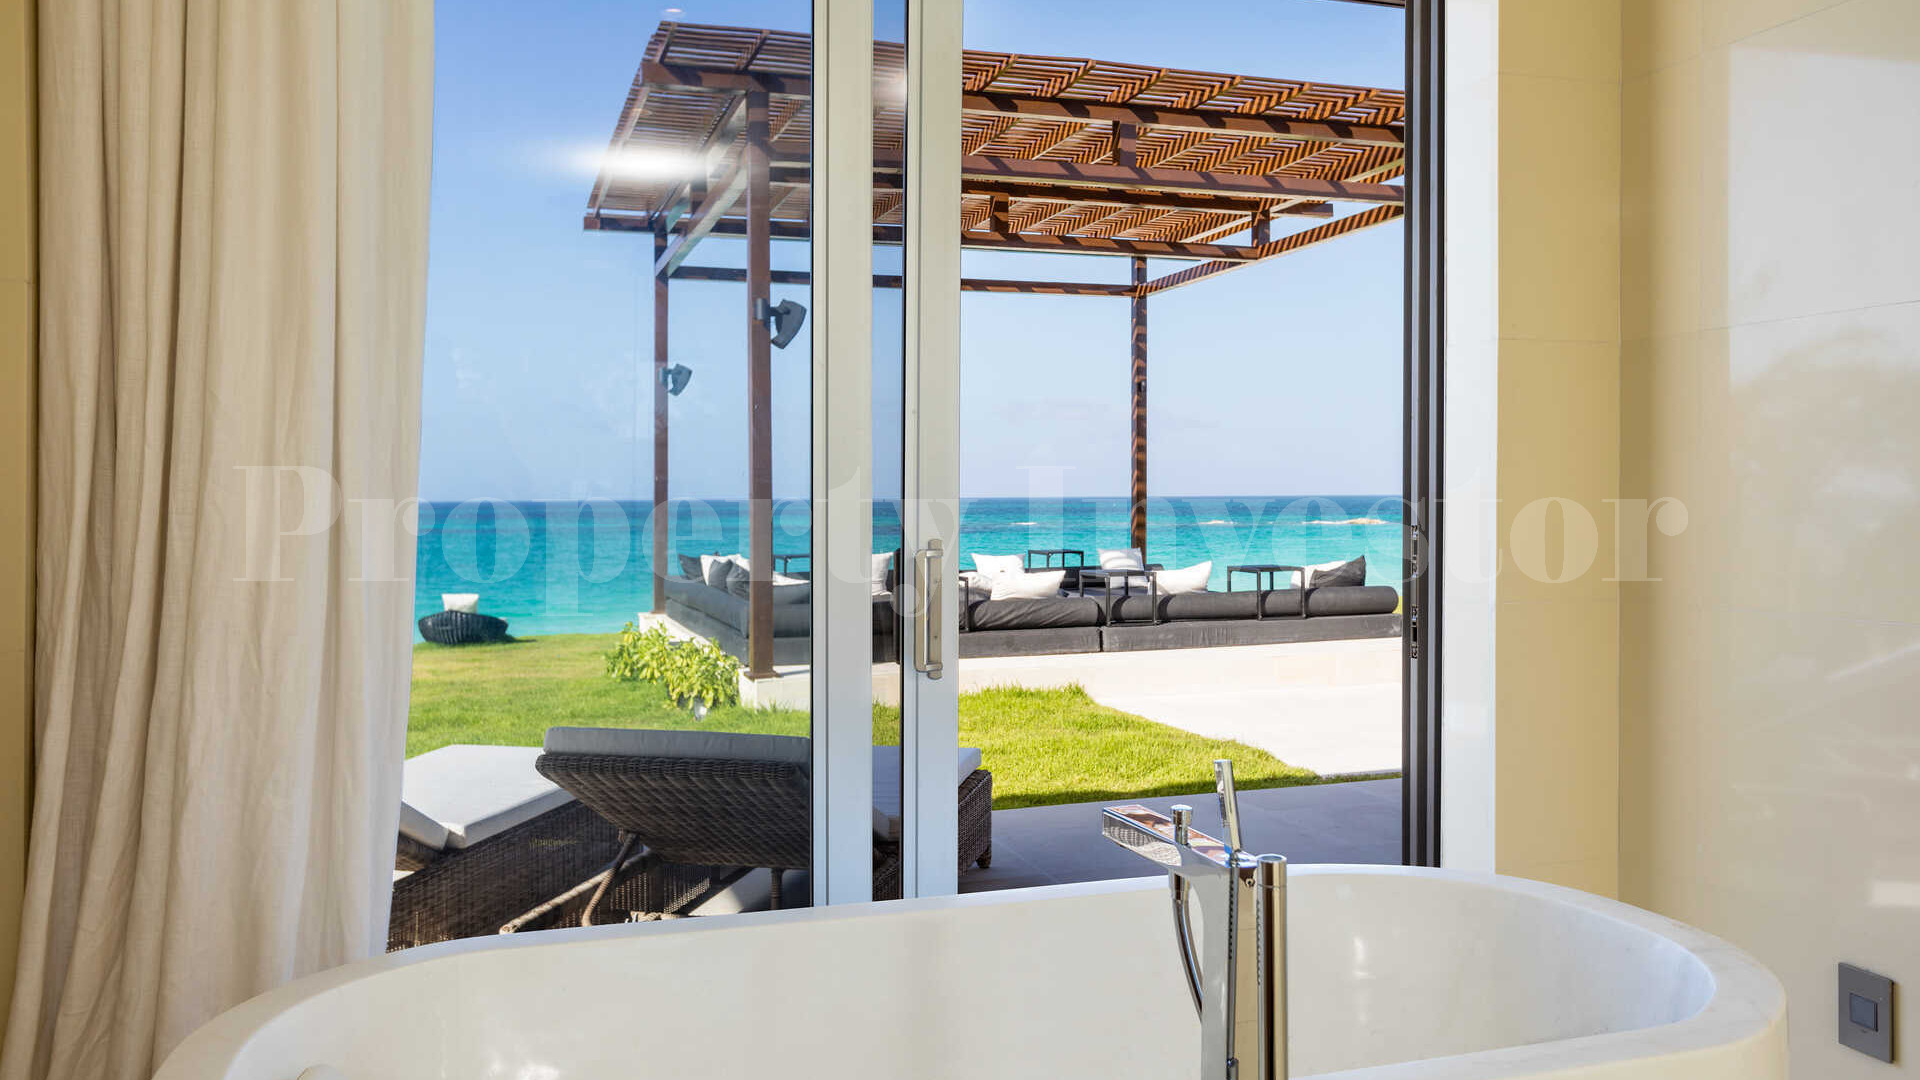 Райская роскошная вилла с 4 спальнями на пляже на о. Эльютера, Багамы